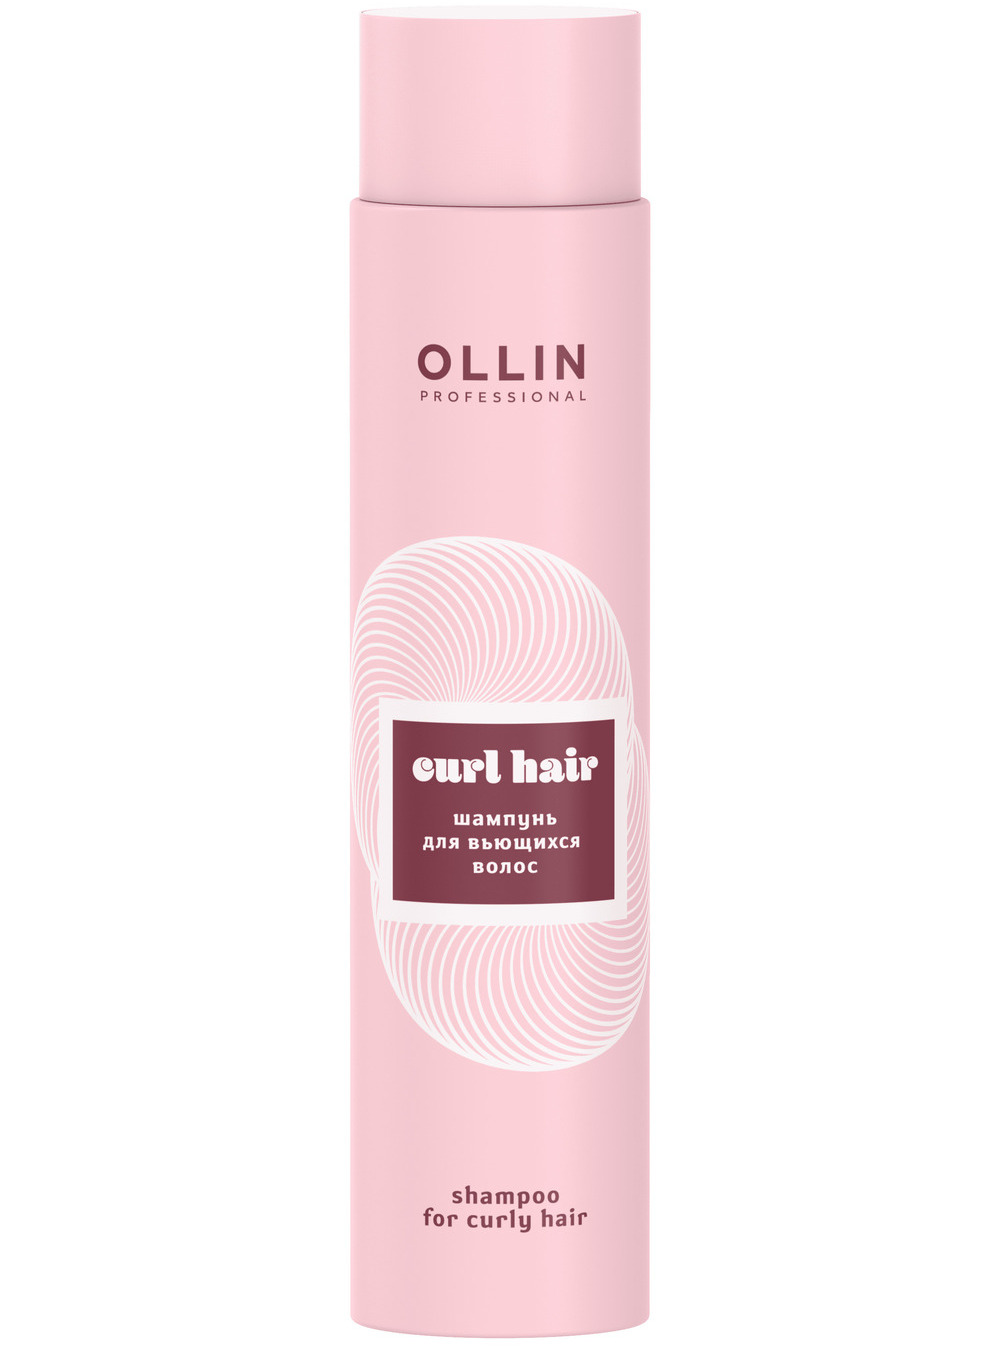 Ollin Professional Шампунь для вьющихся волос, 300 мл (Ollin Professional, Curl  Smooth Hair)